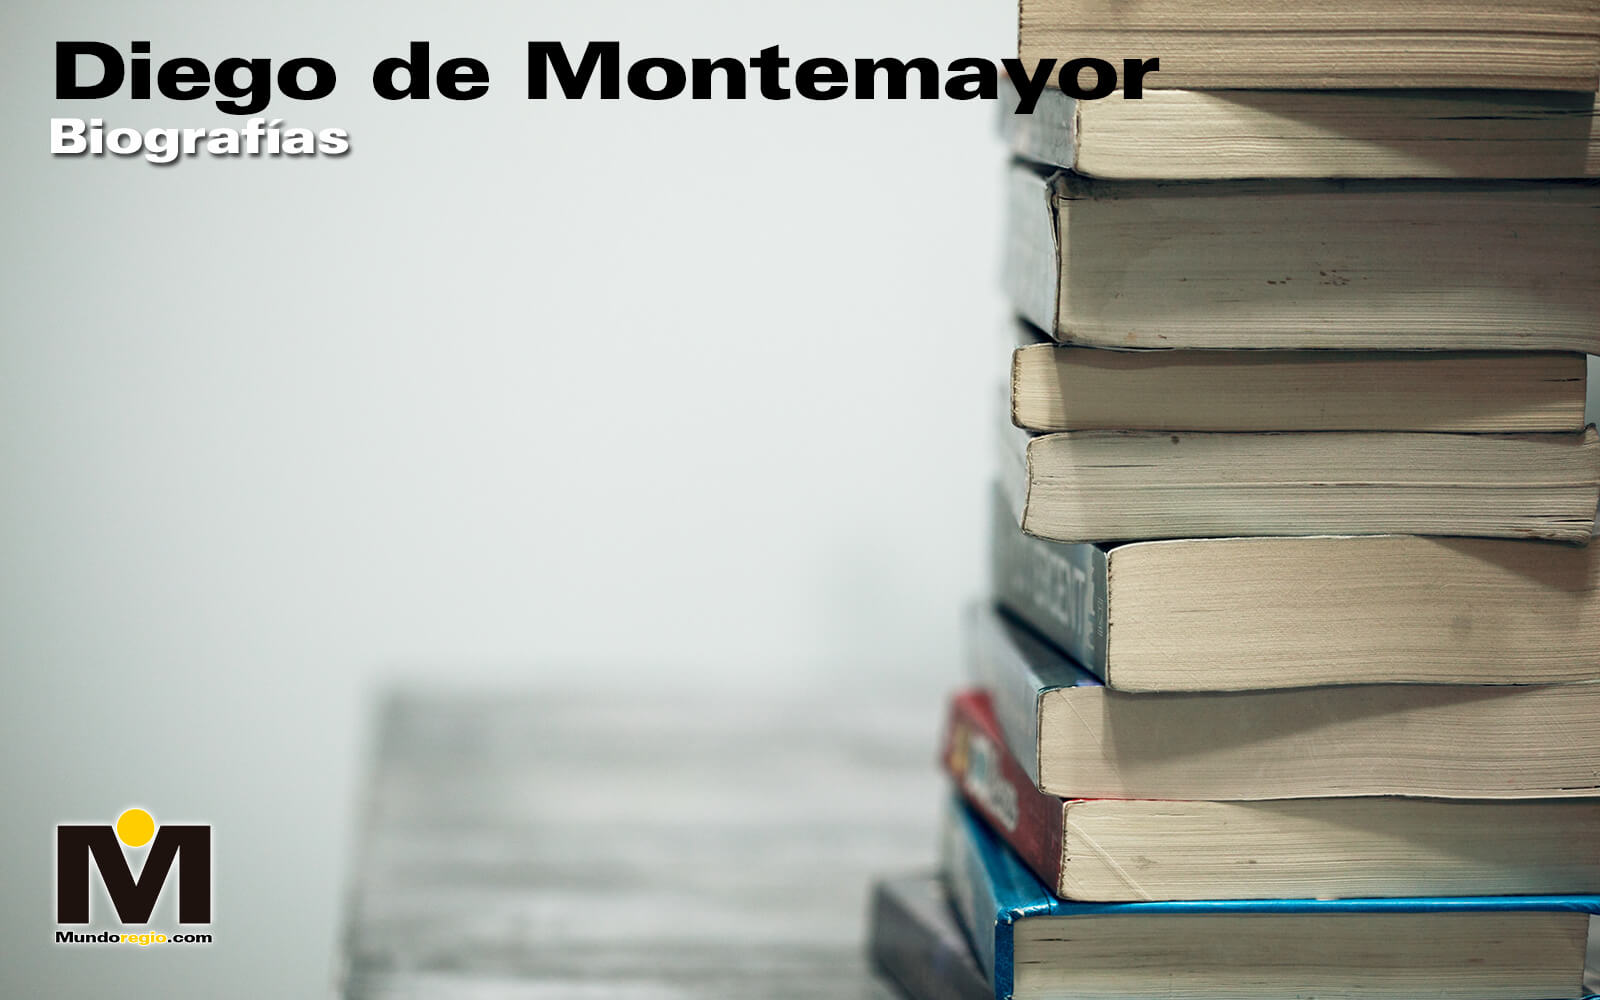 Diego de Montemayor